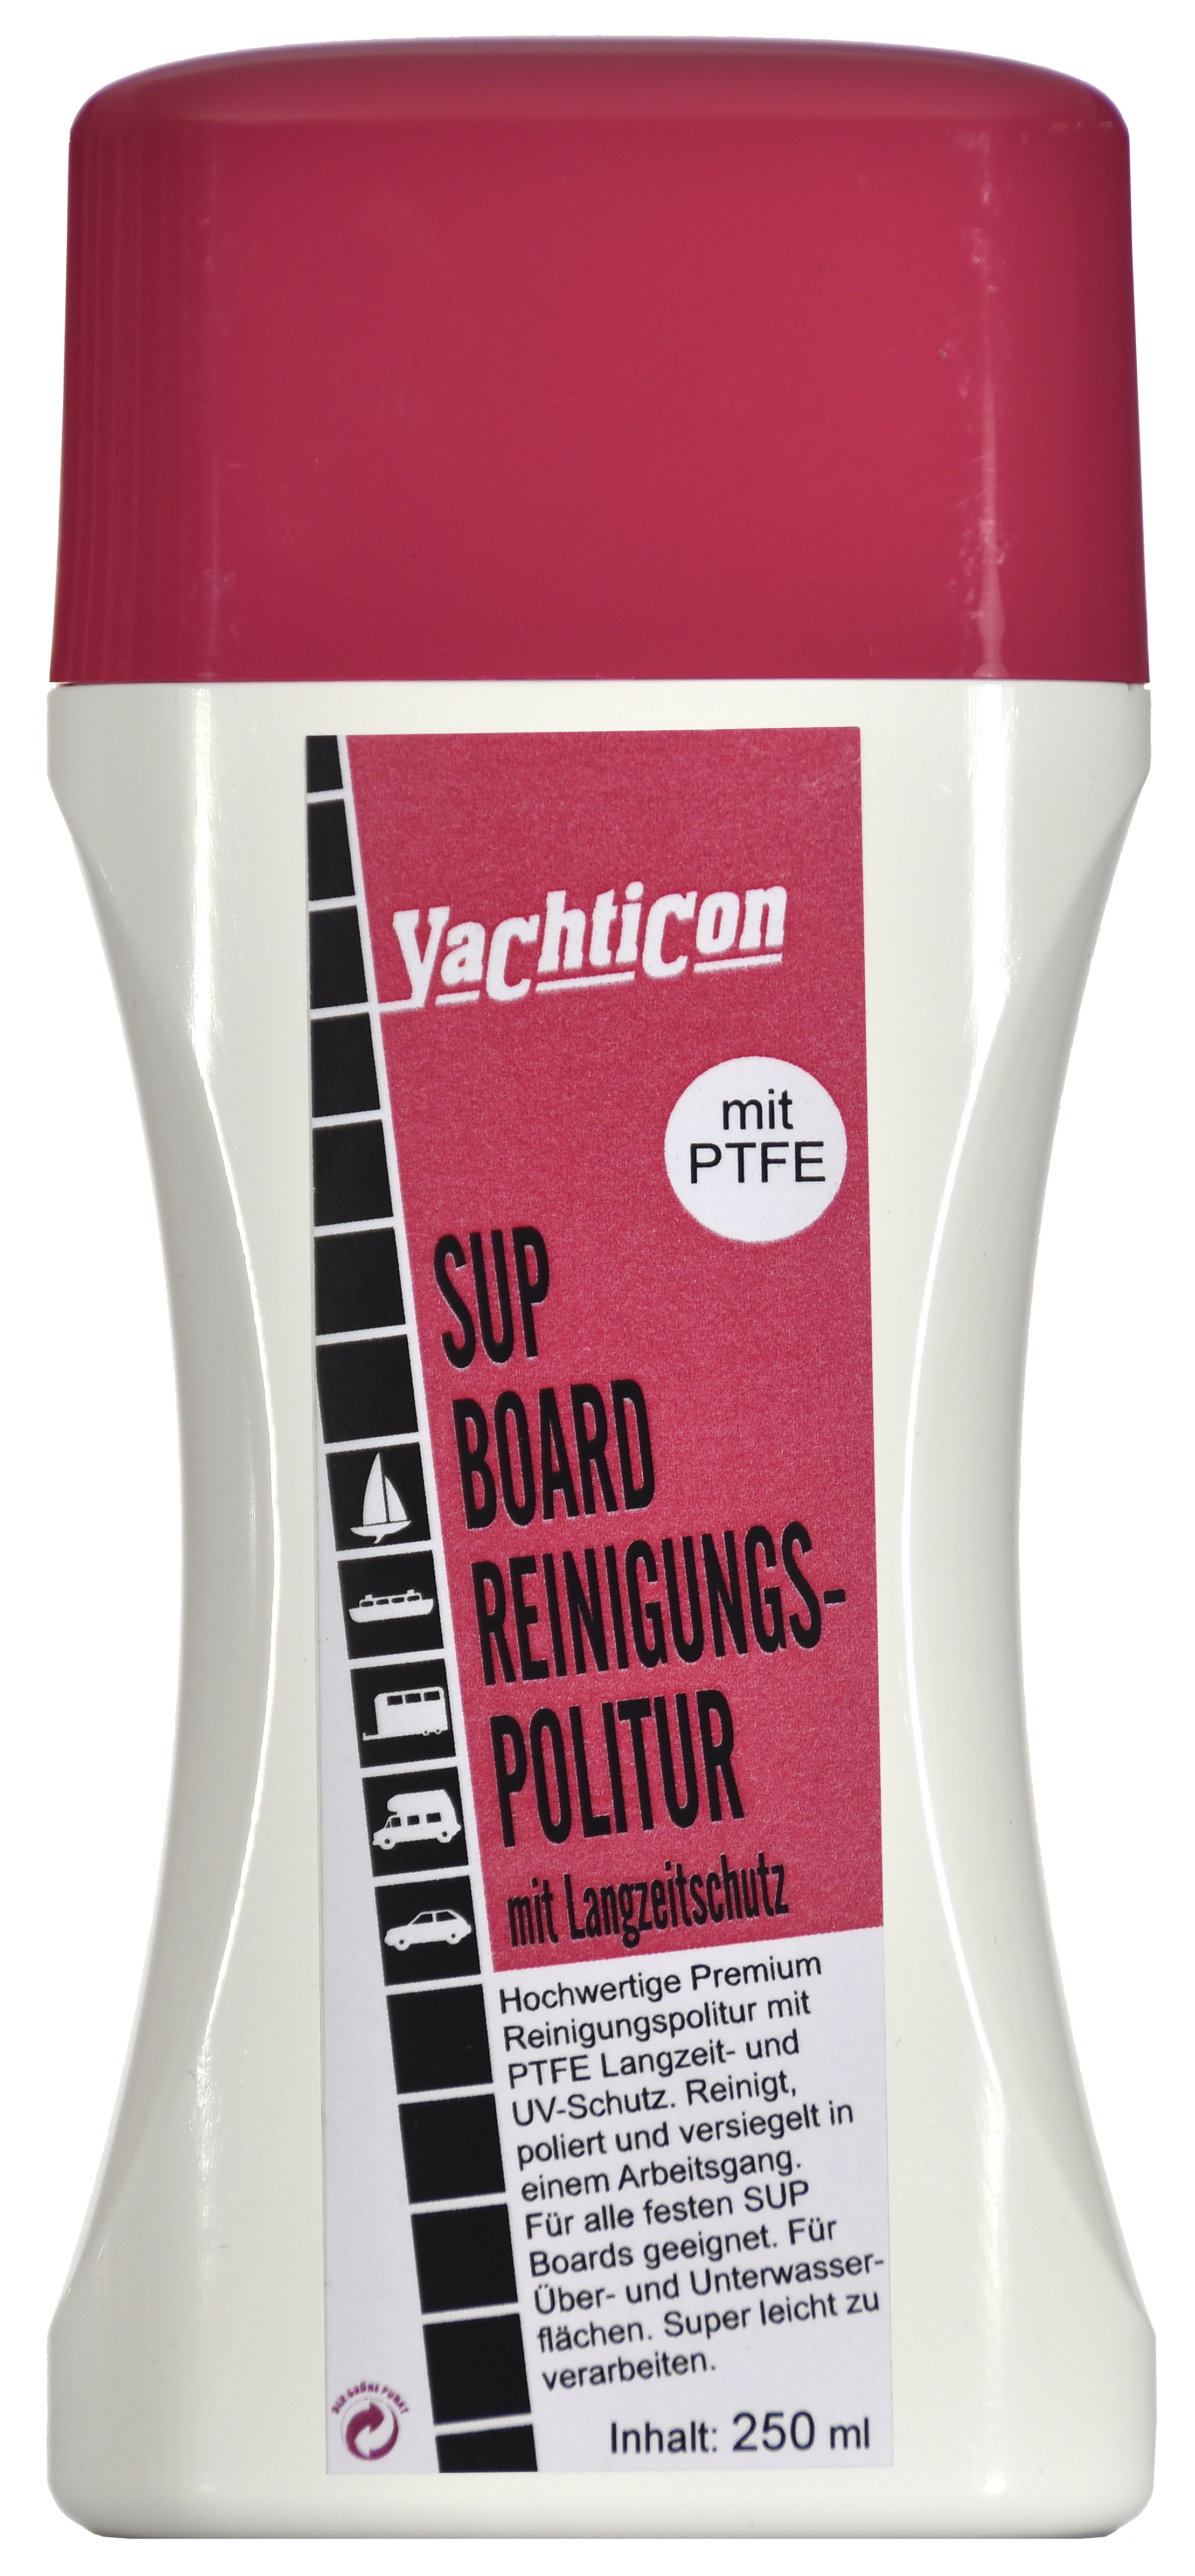 Yachticon SUP Board Reinigungspolitur 250 ml